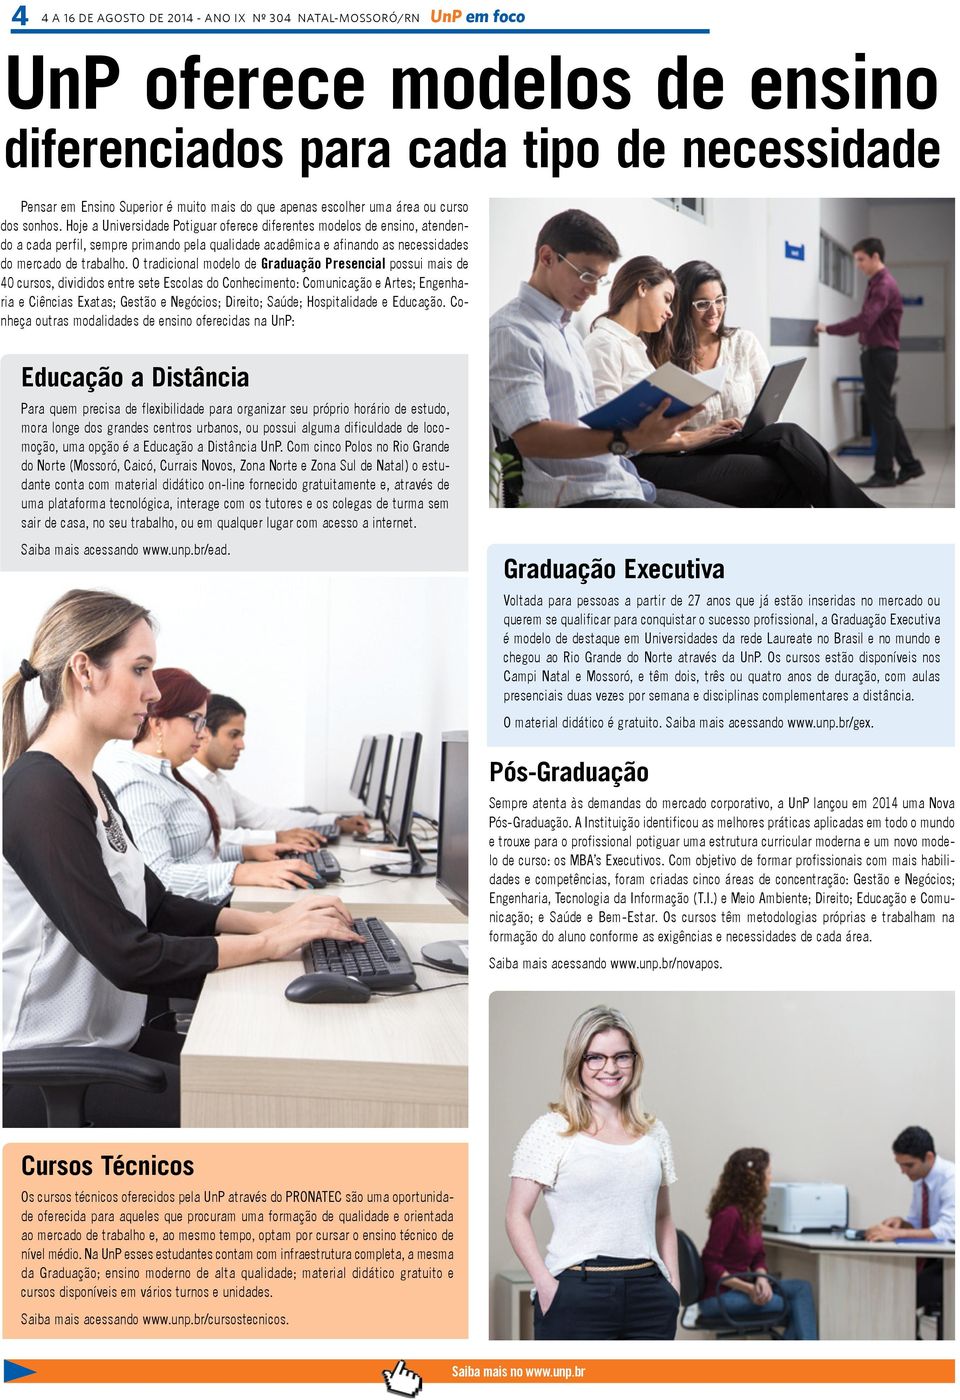 Hoje a Universidade Potiguar oferece diferentes modelos de ensino, atendendo a cada perfil, sempre primando pela qualidade acadêmica e afinando as necessidades do mercado de trabalho.